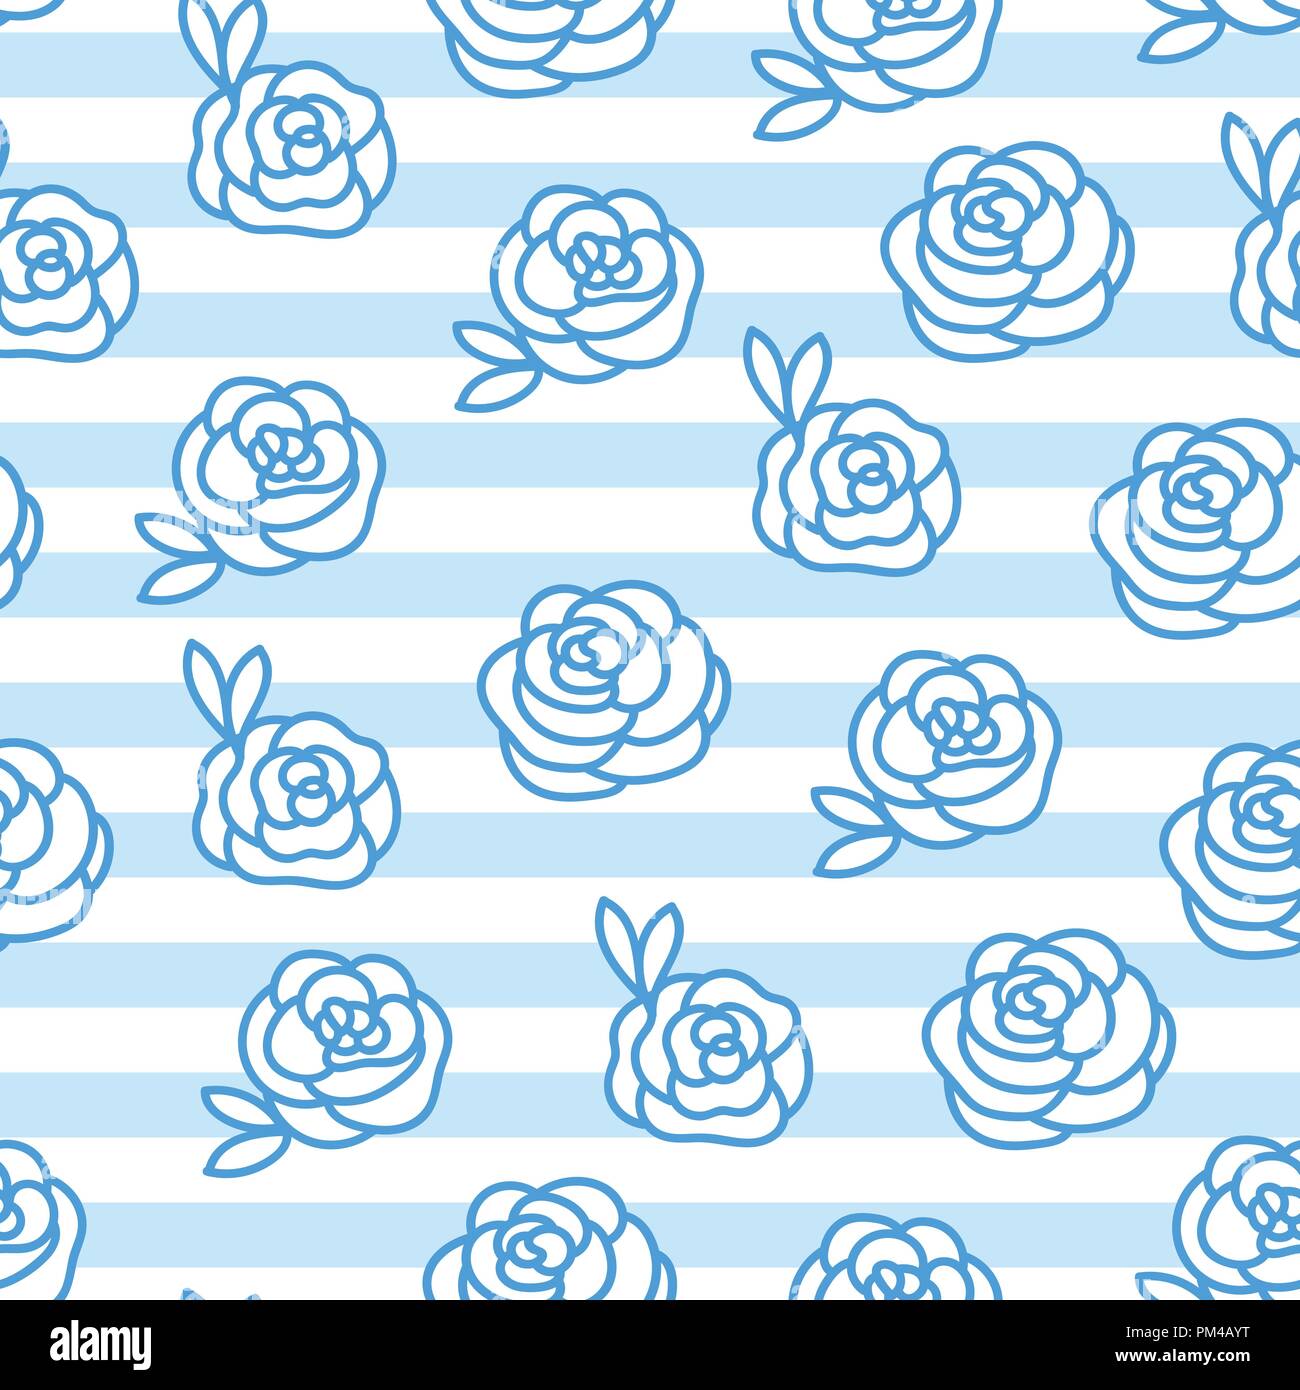 Vector Winter seamless pattern. Rose fiore del disegno a mano con illustrazione striped isolati su sfondo bianco. Illustrazione Vettoriale